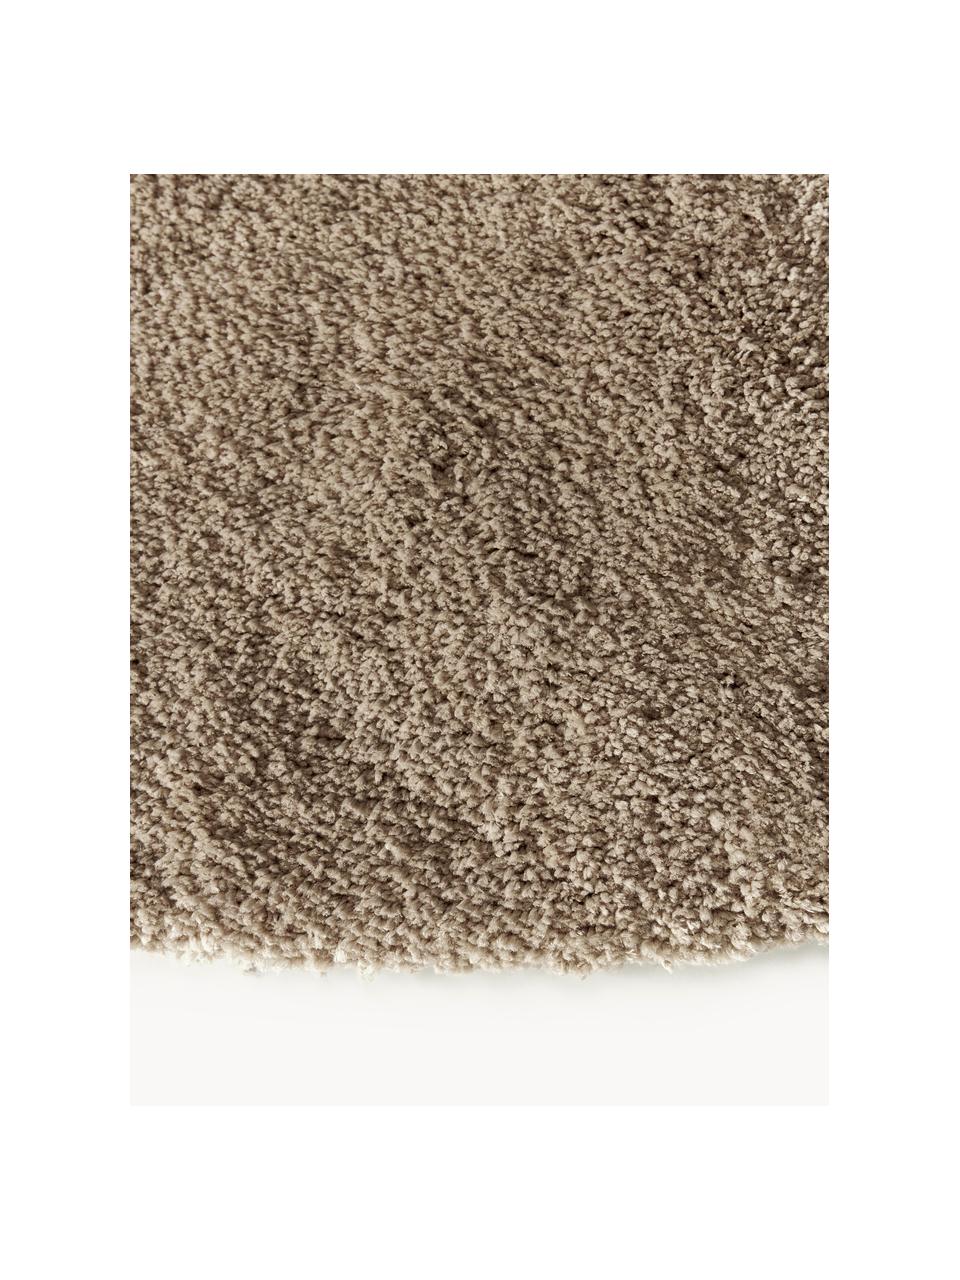 Pluizig rond hoogpolig vloerkleed Leighton, Microvezels (100% polyester, GRS-gecertificeerd), Bruin, Ø 120 cm (maat S)